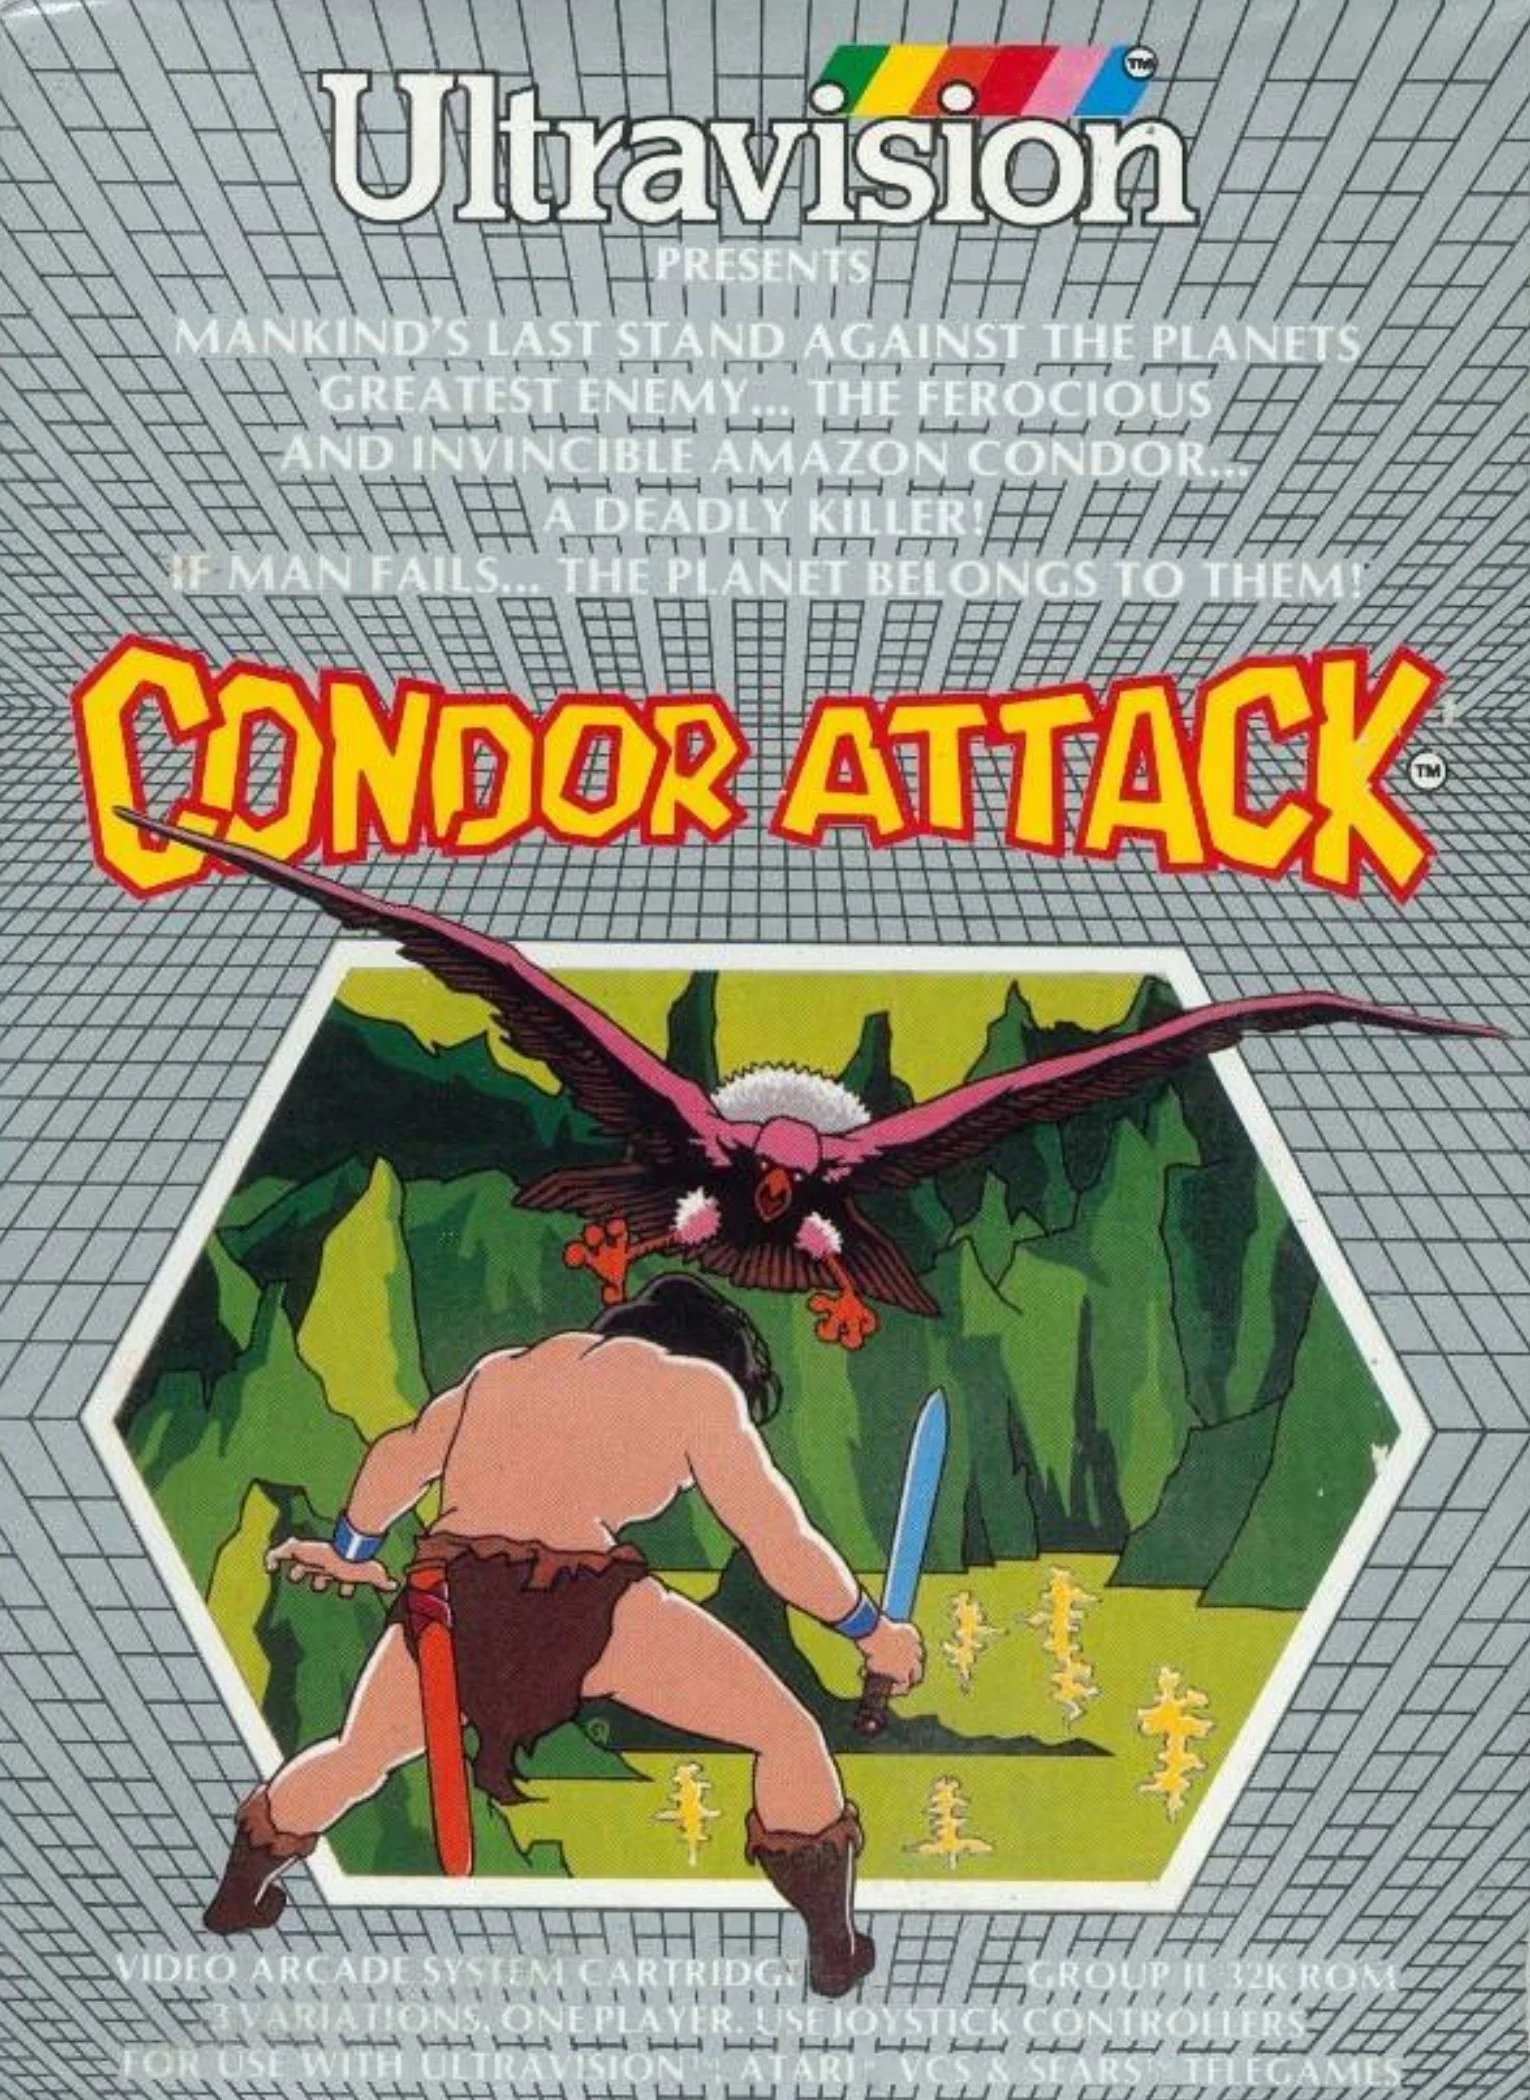 Condor Attack